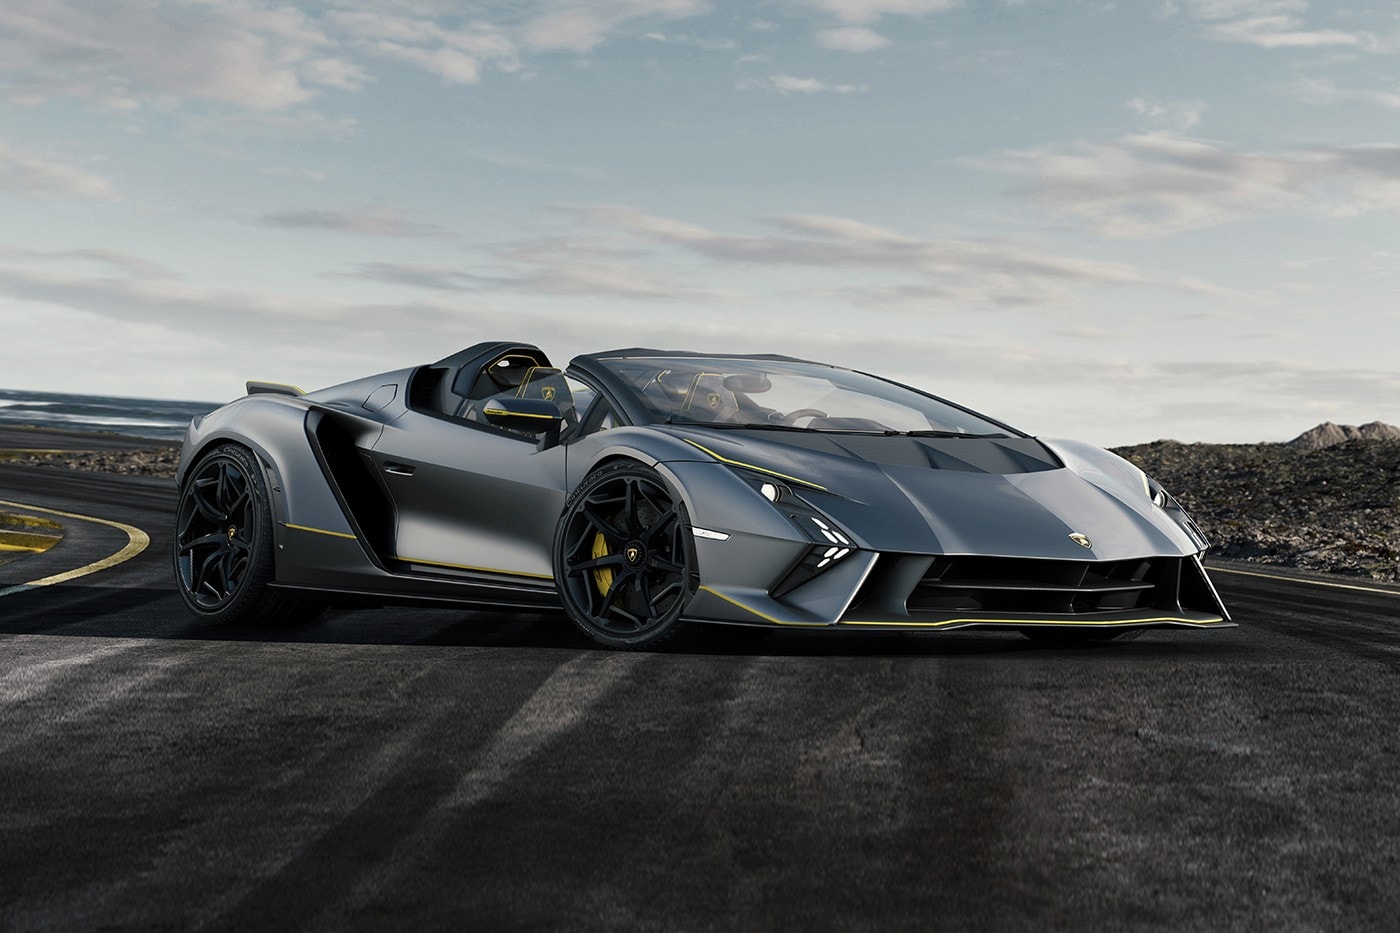 Lamborghini 正式發表全球限量一輛 V12 引擎 Invencible 與 Autentica 超跑